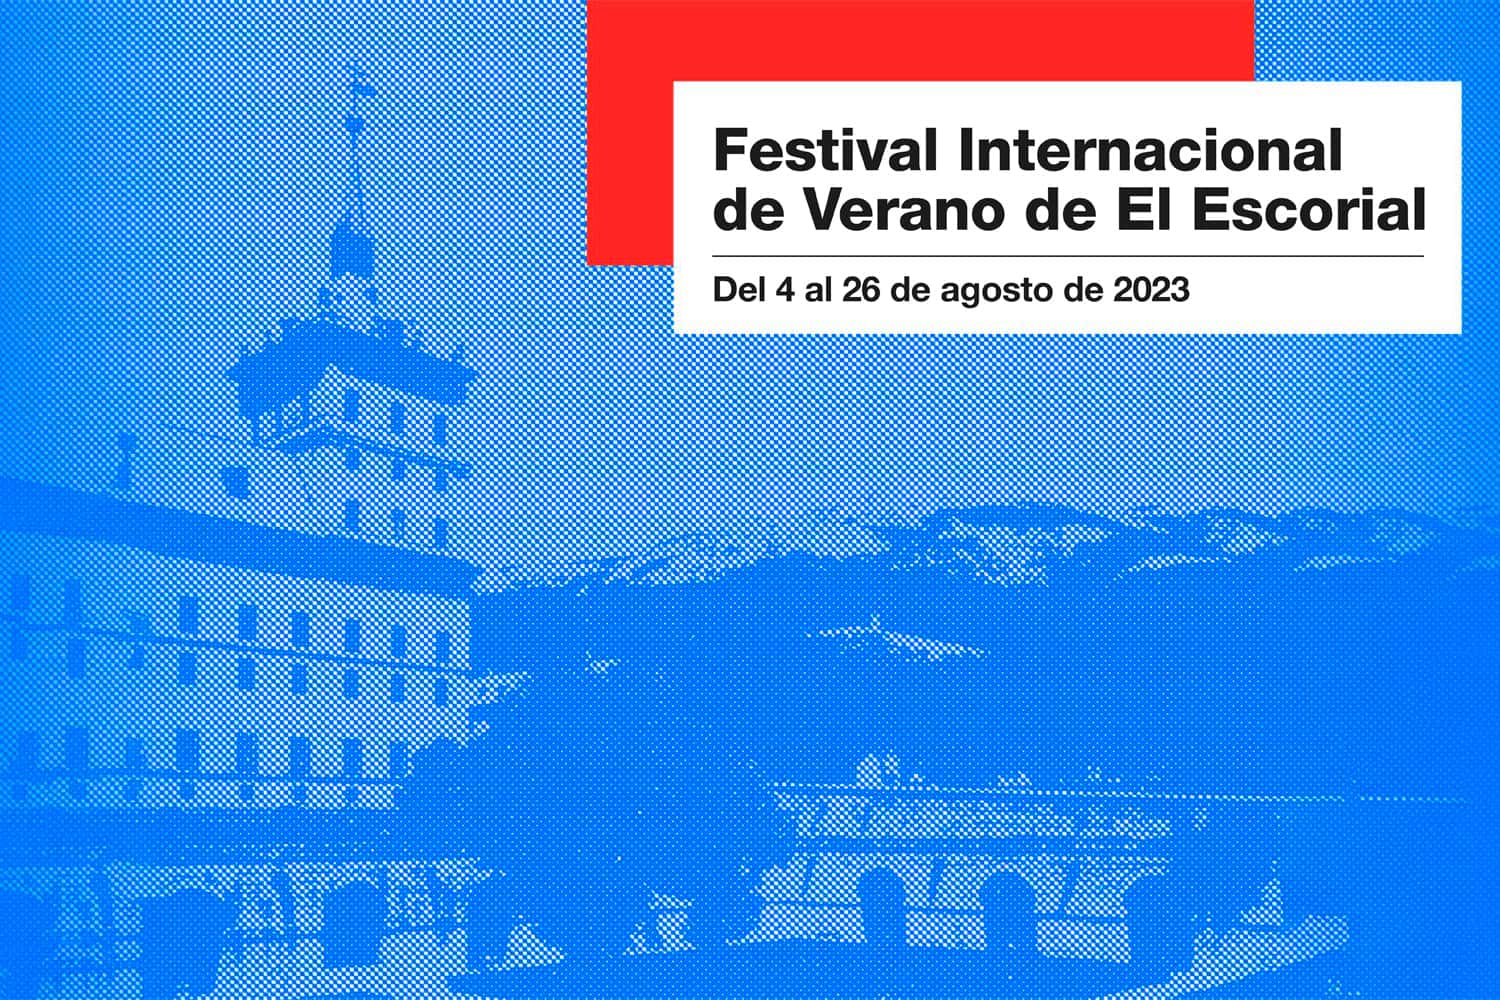 El Escorial International Summer Festival